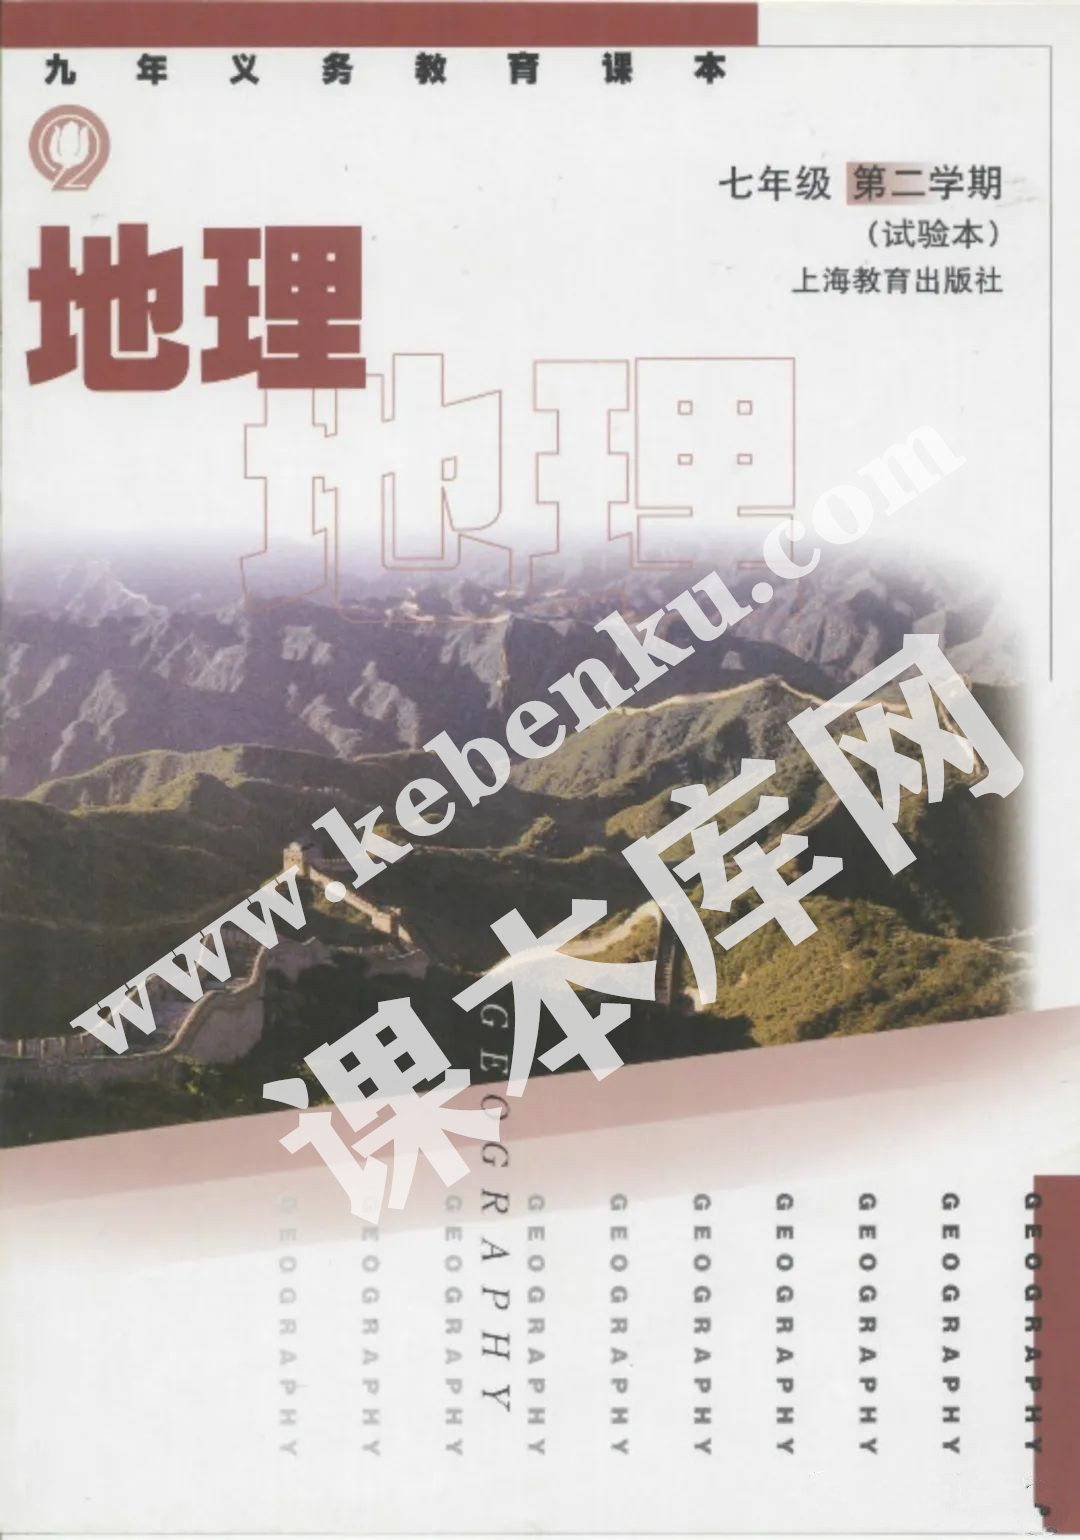 上海教育出版社九年义务教育课本七年级地理第二学期(试用本)电子课本